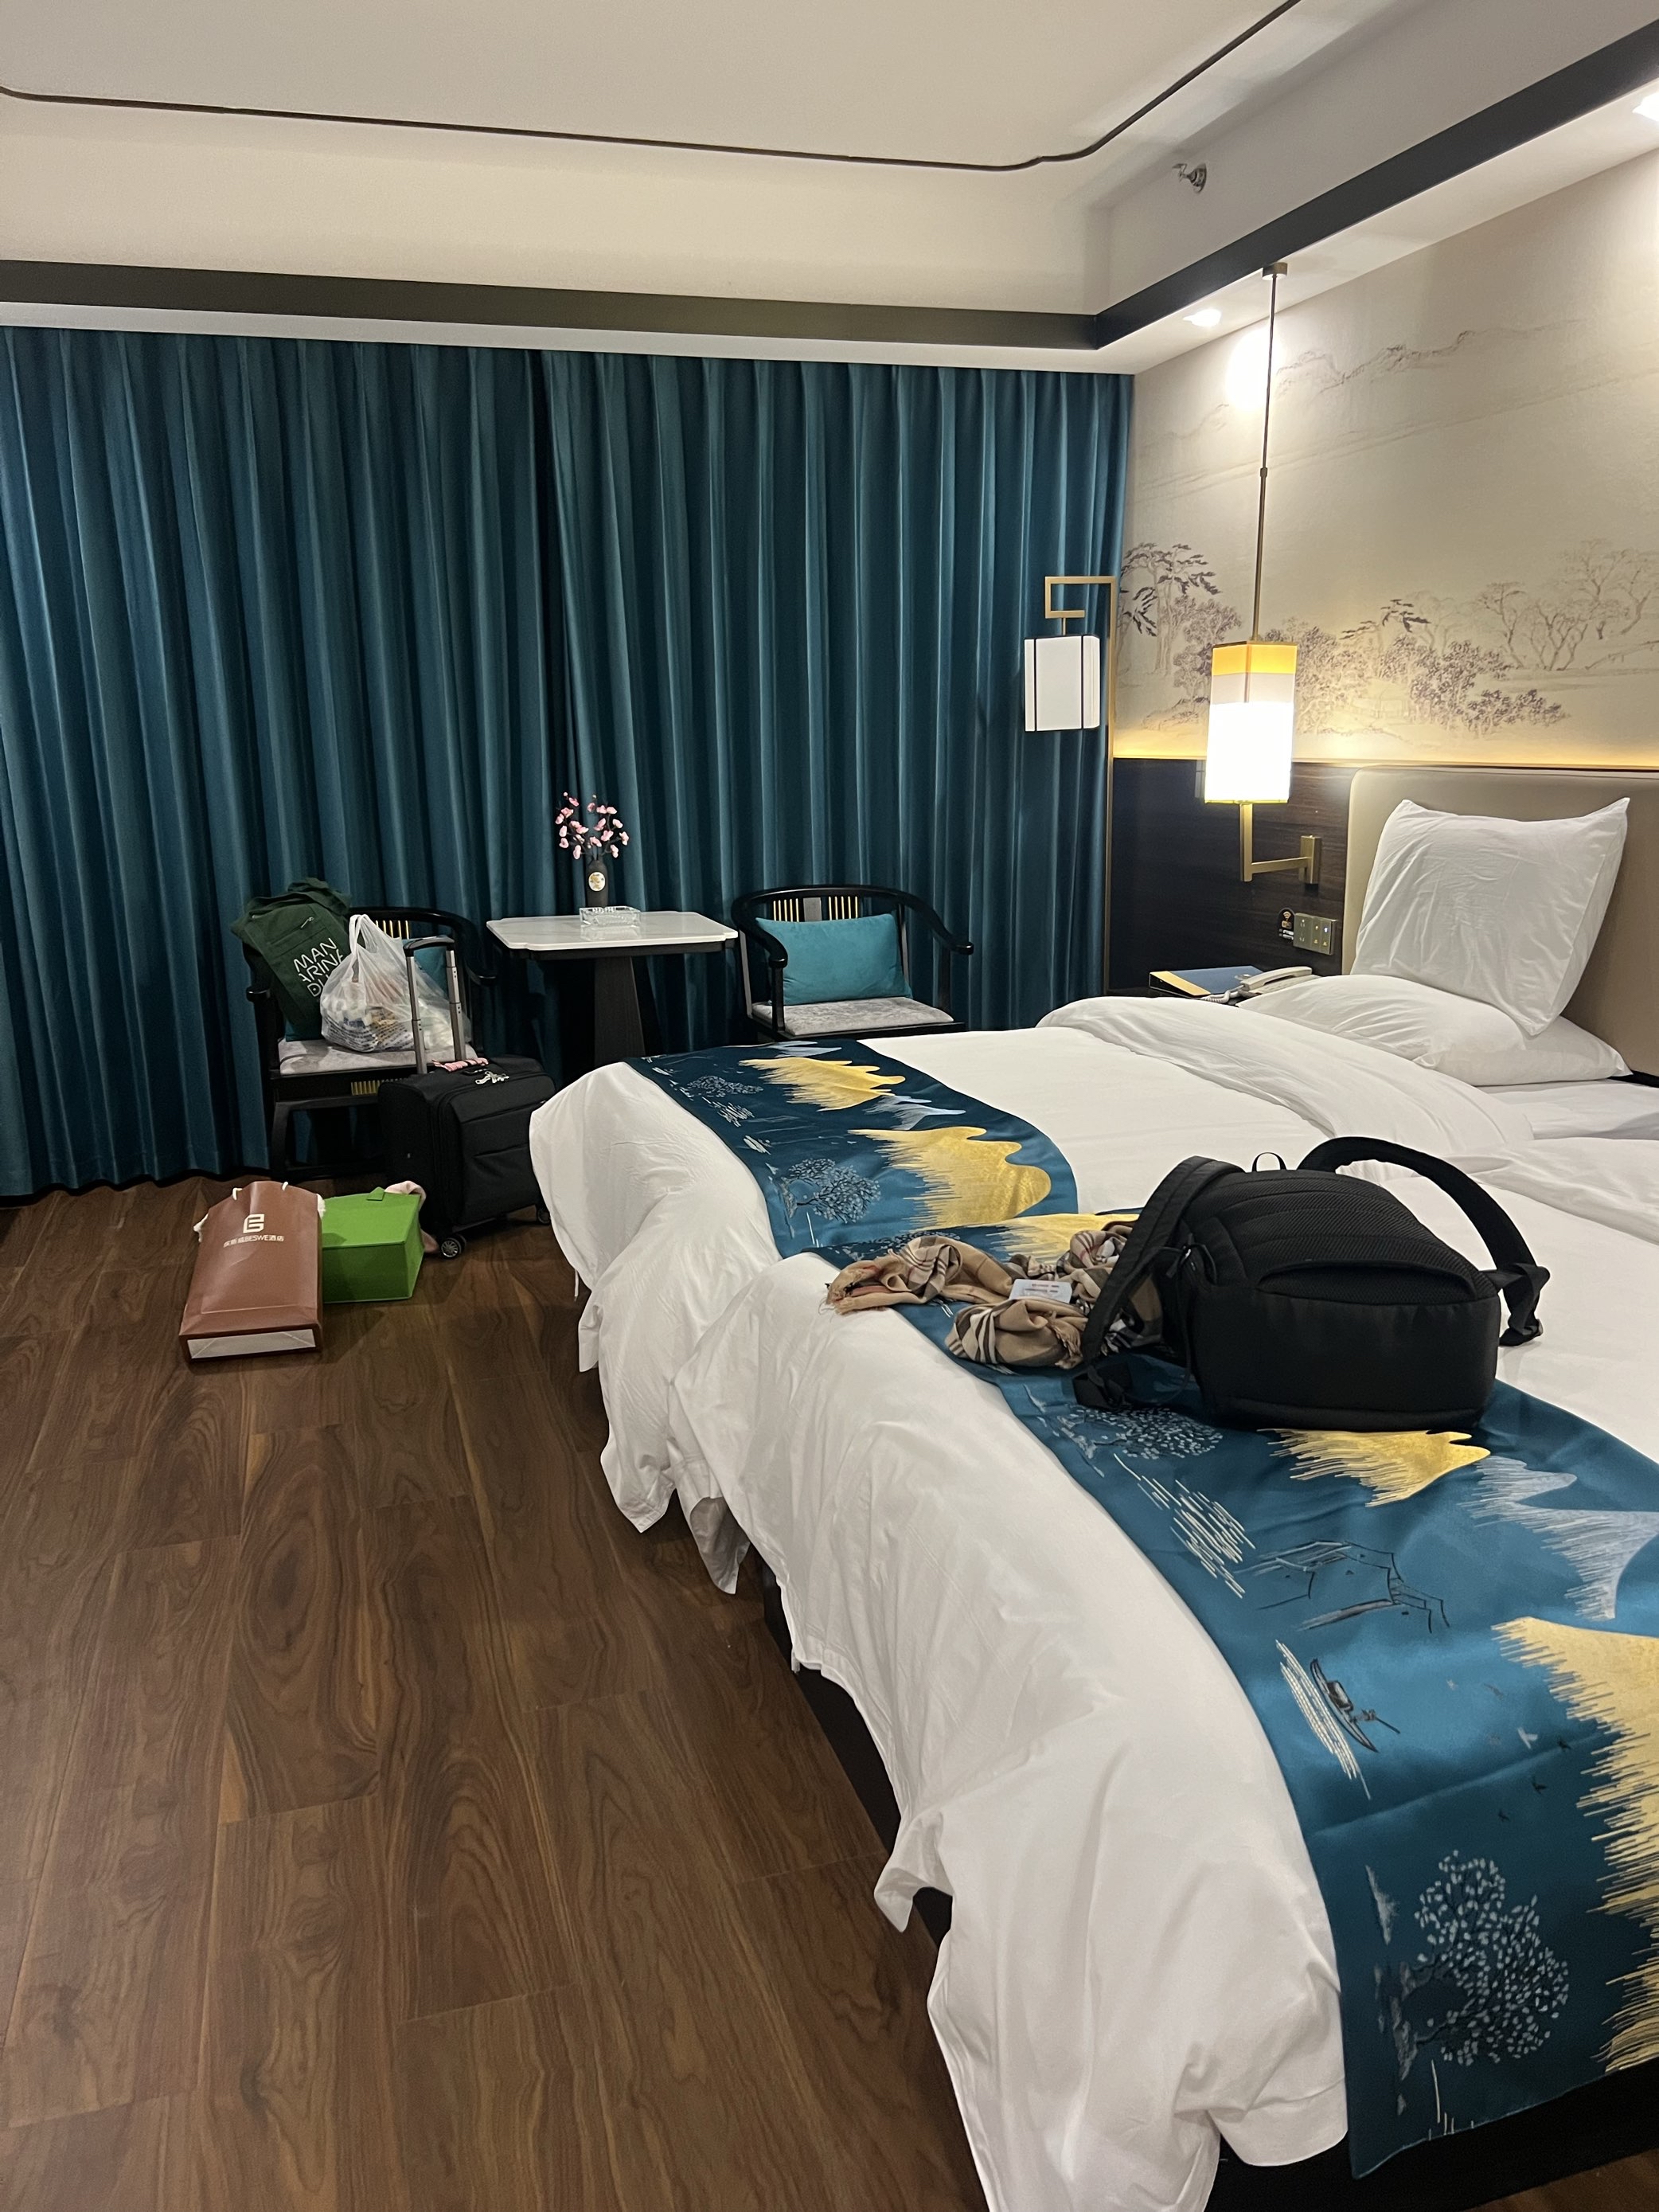 酒店周边环境非常好，房间宽敞舒适整洁，在峡江能有这么好的酒店，价格又很实惠的酒店真是非常棒，会介绍给